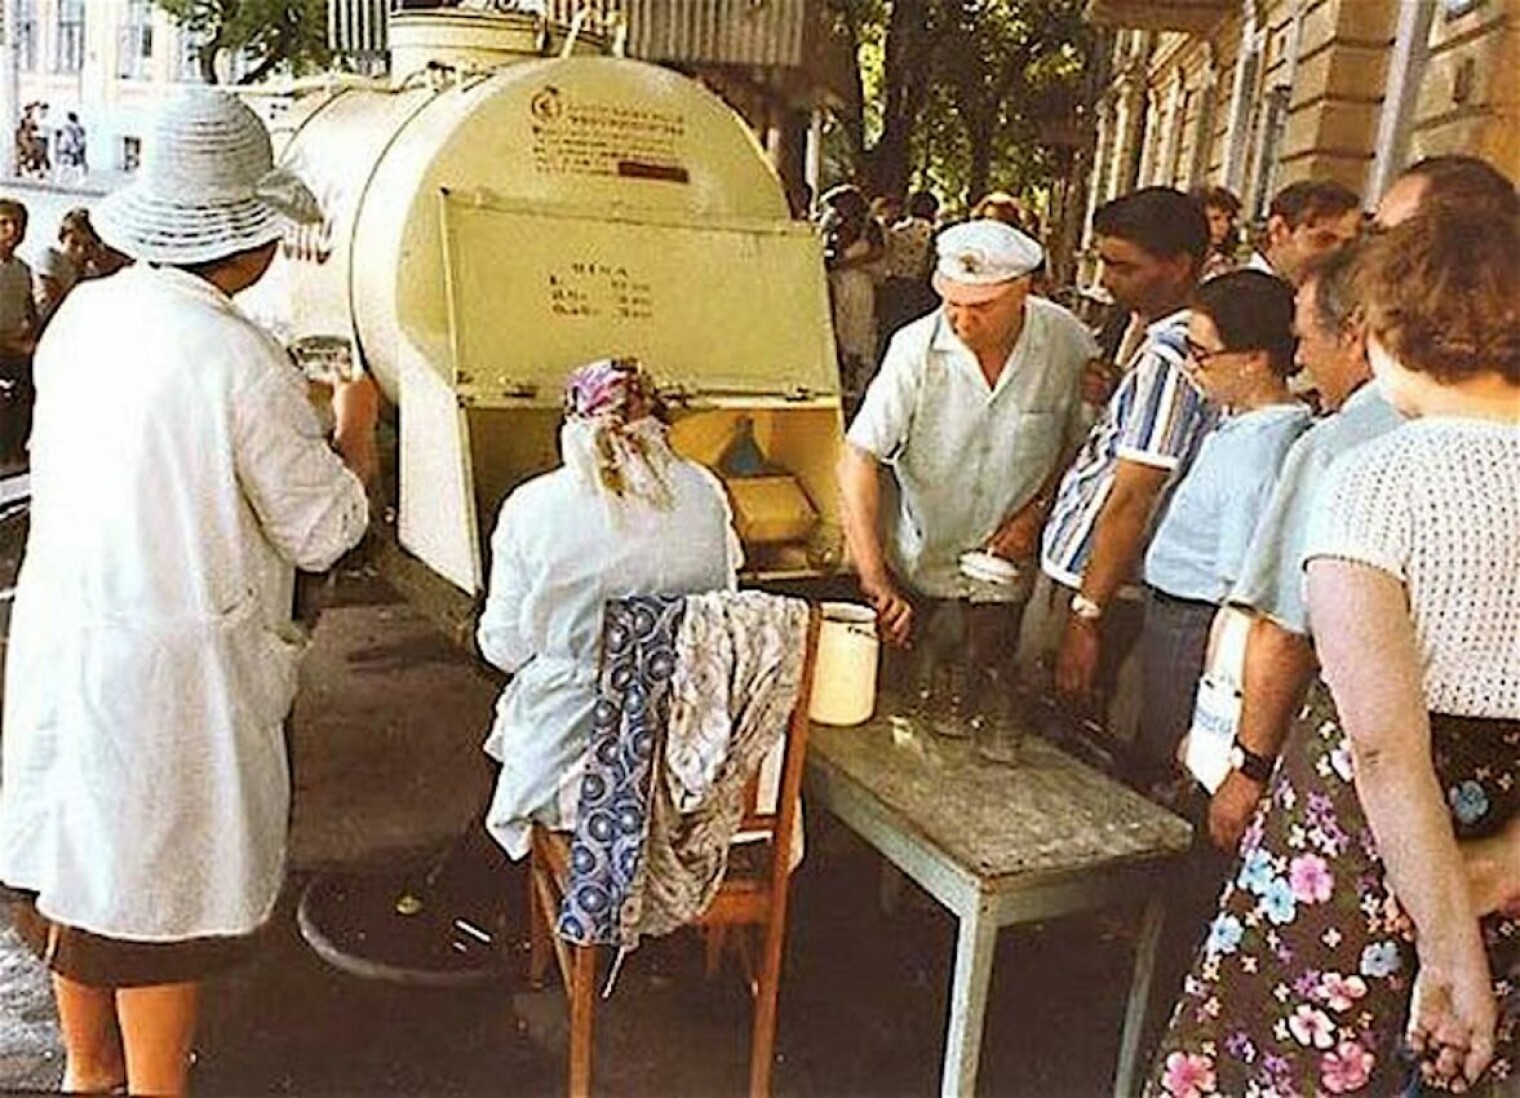 Вечная очередь у "желтой бочки" вполне может служить доказательством стабильного спроса на хлебный квас у жителей бывшего СССР